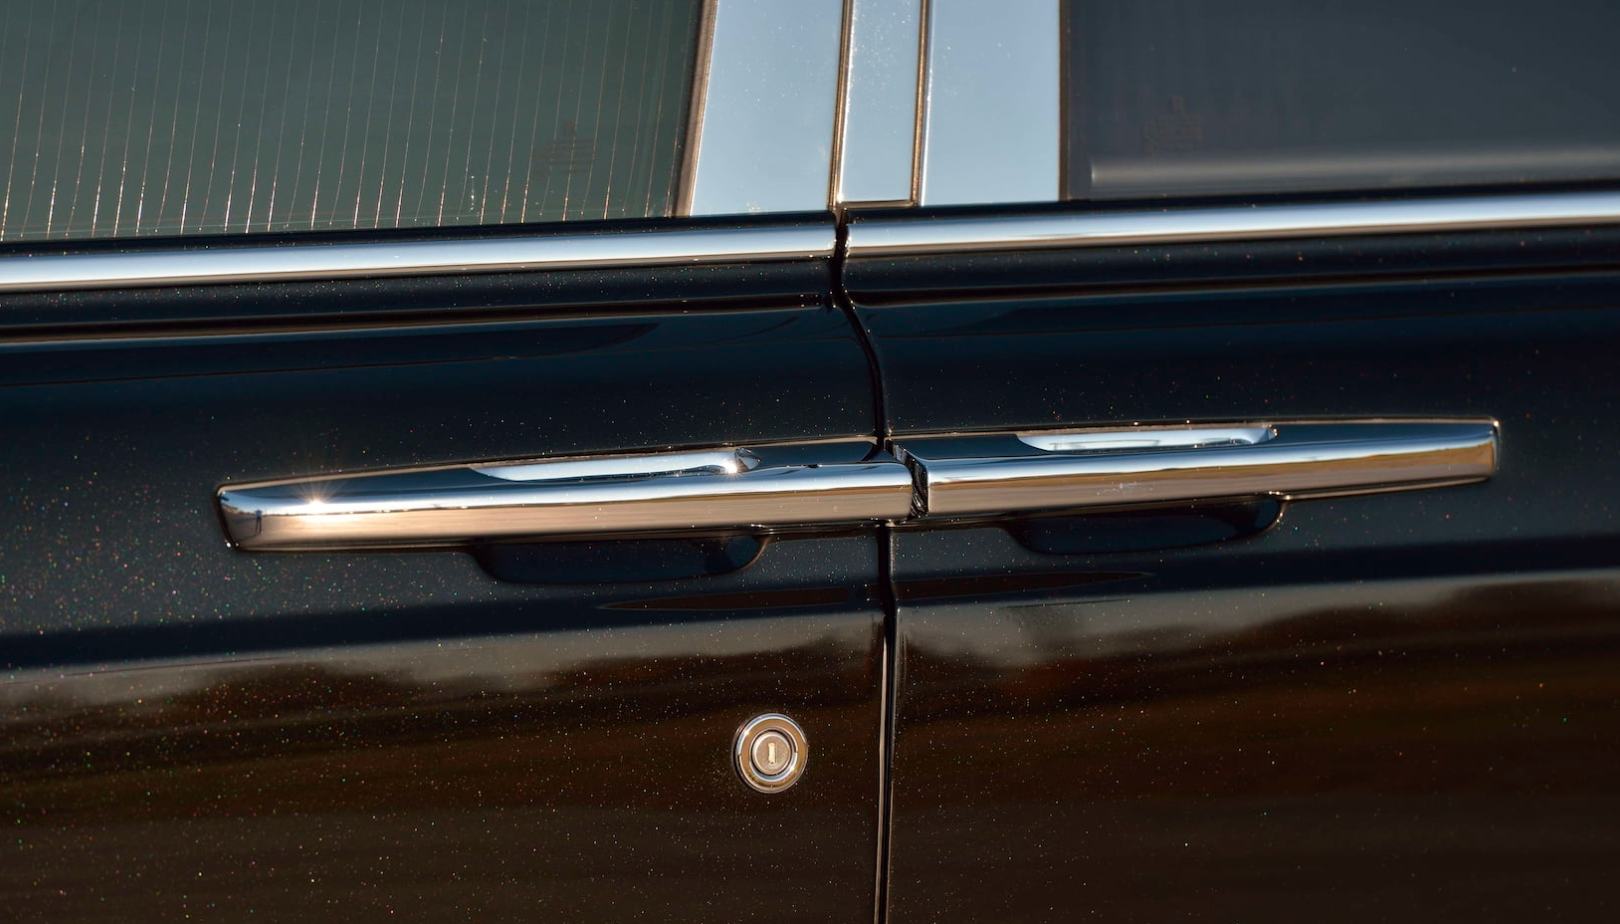 Rolls-Royce Phantom từng của Donald Trump sắp được bán đấu giá anh-chup-man-hinh-2021-01-07-luc-152548.png